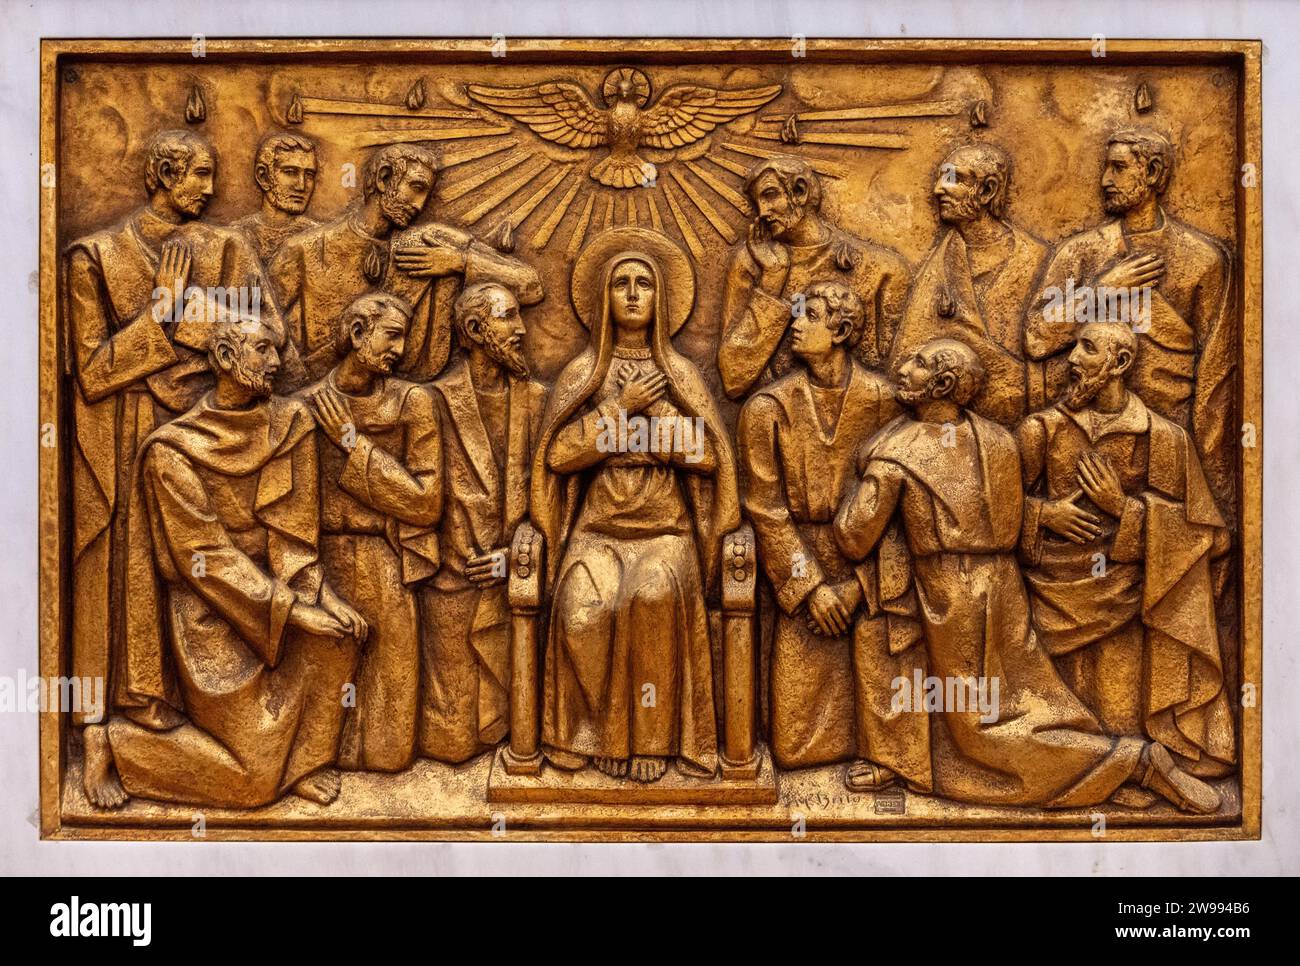 La descente du Saint-Esprit – troisième mystère glorieux. Une sculpture en relief dans la basilique notre-Dame du Rosaire de Fatima à Fatima, Portugal. Banque D'Images